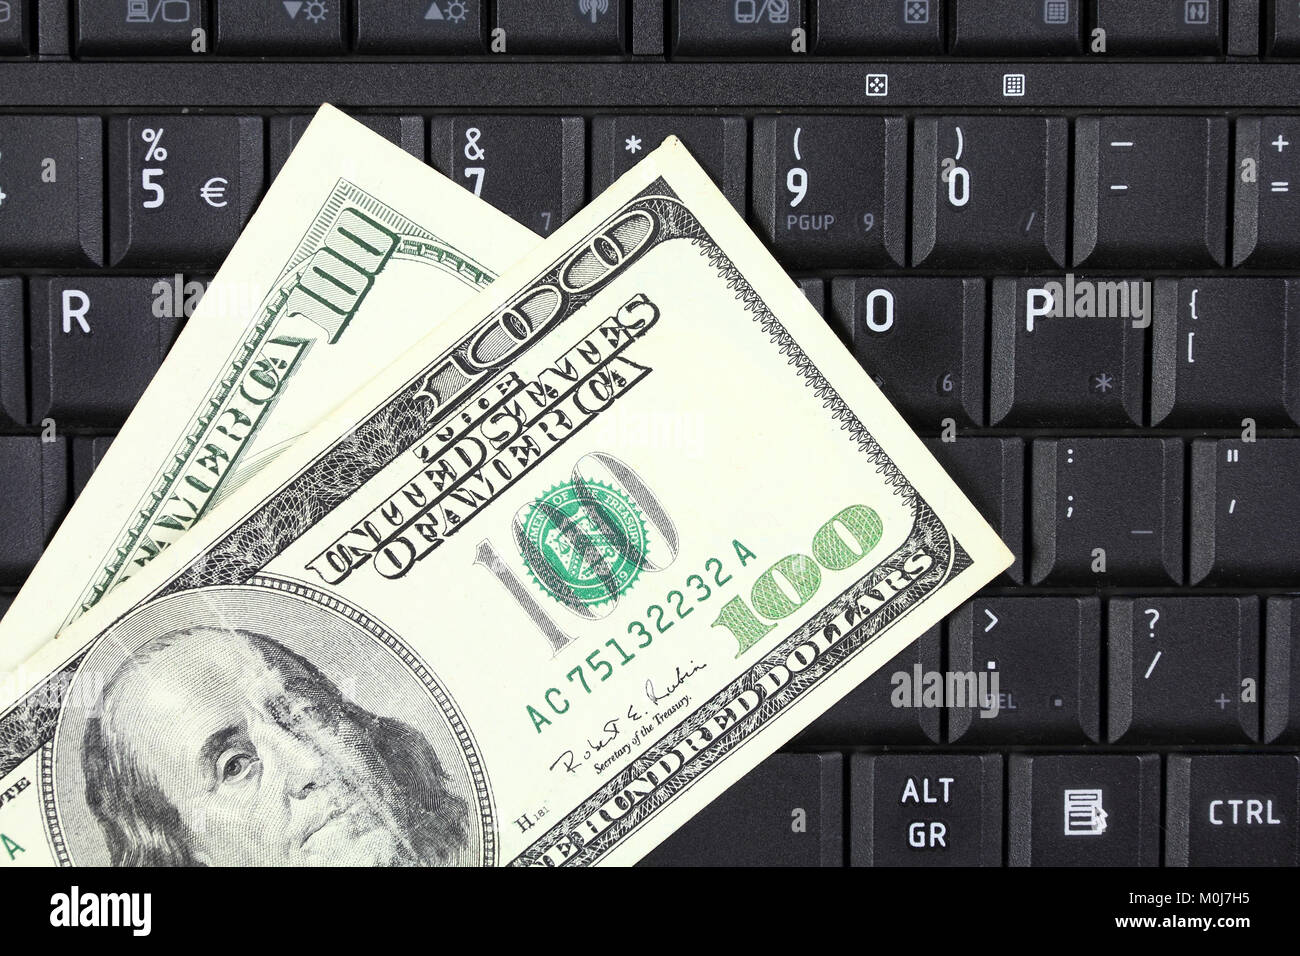 Des affaires en ligne - clavier portable et dollars US Banque D'Images